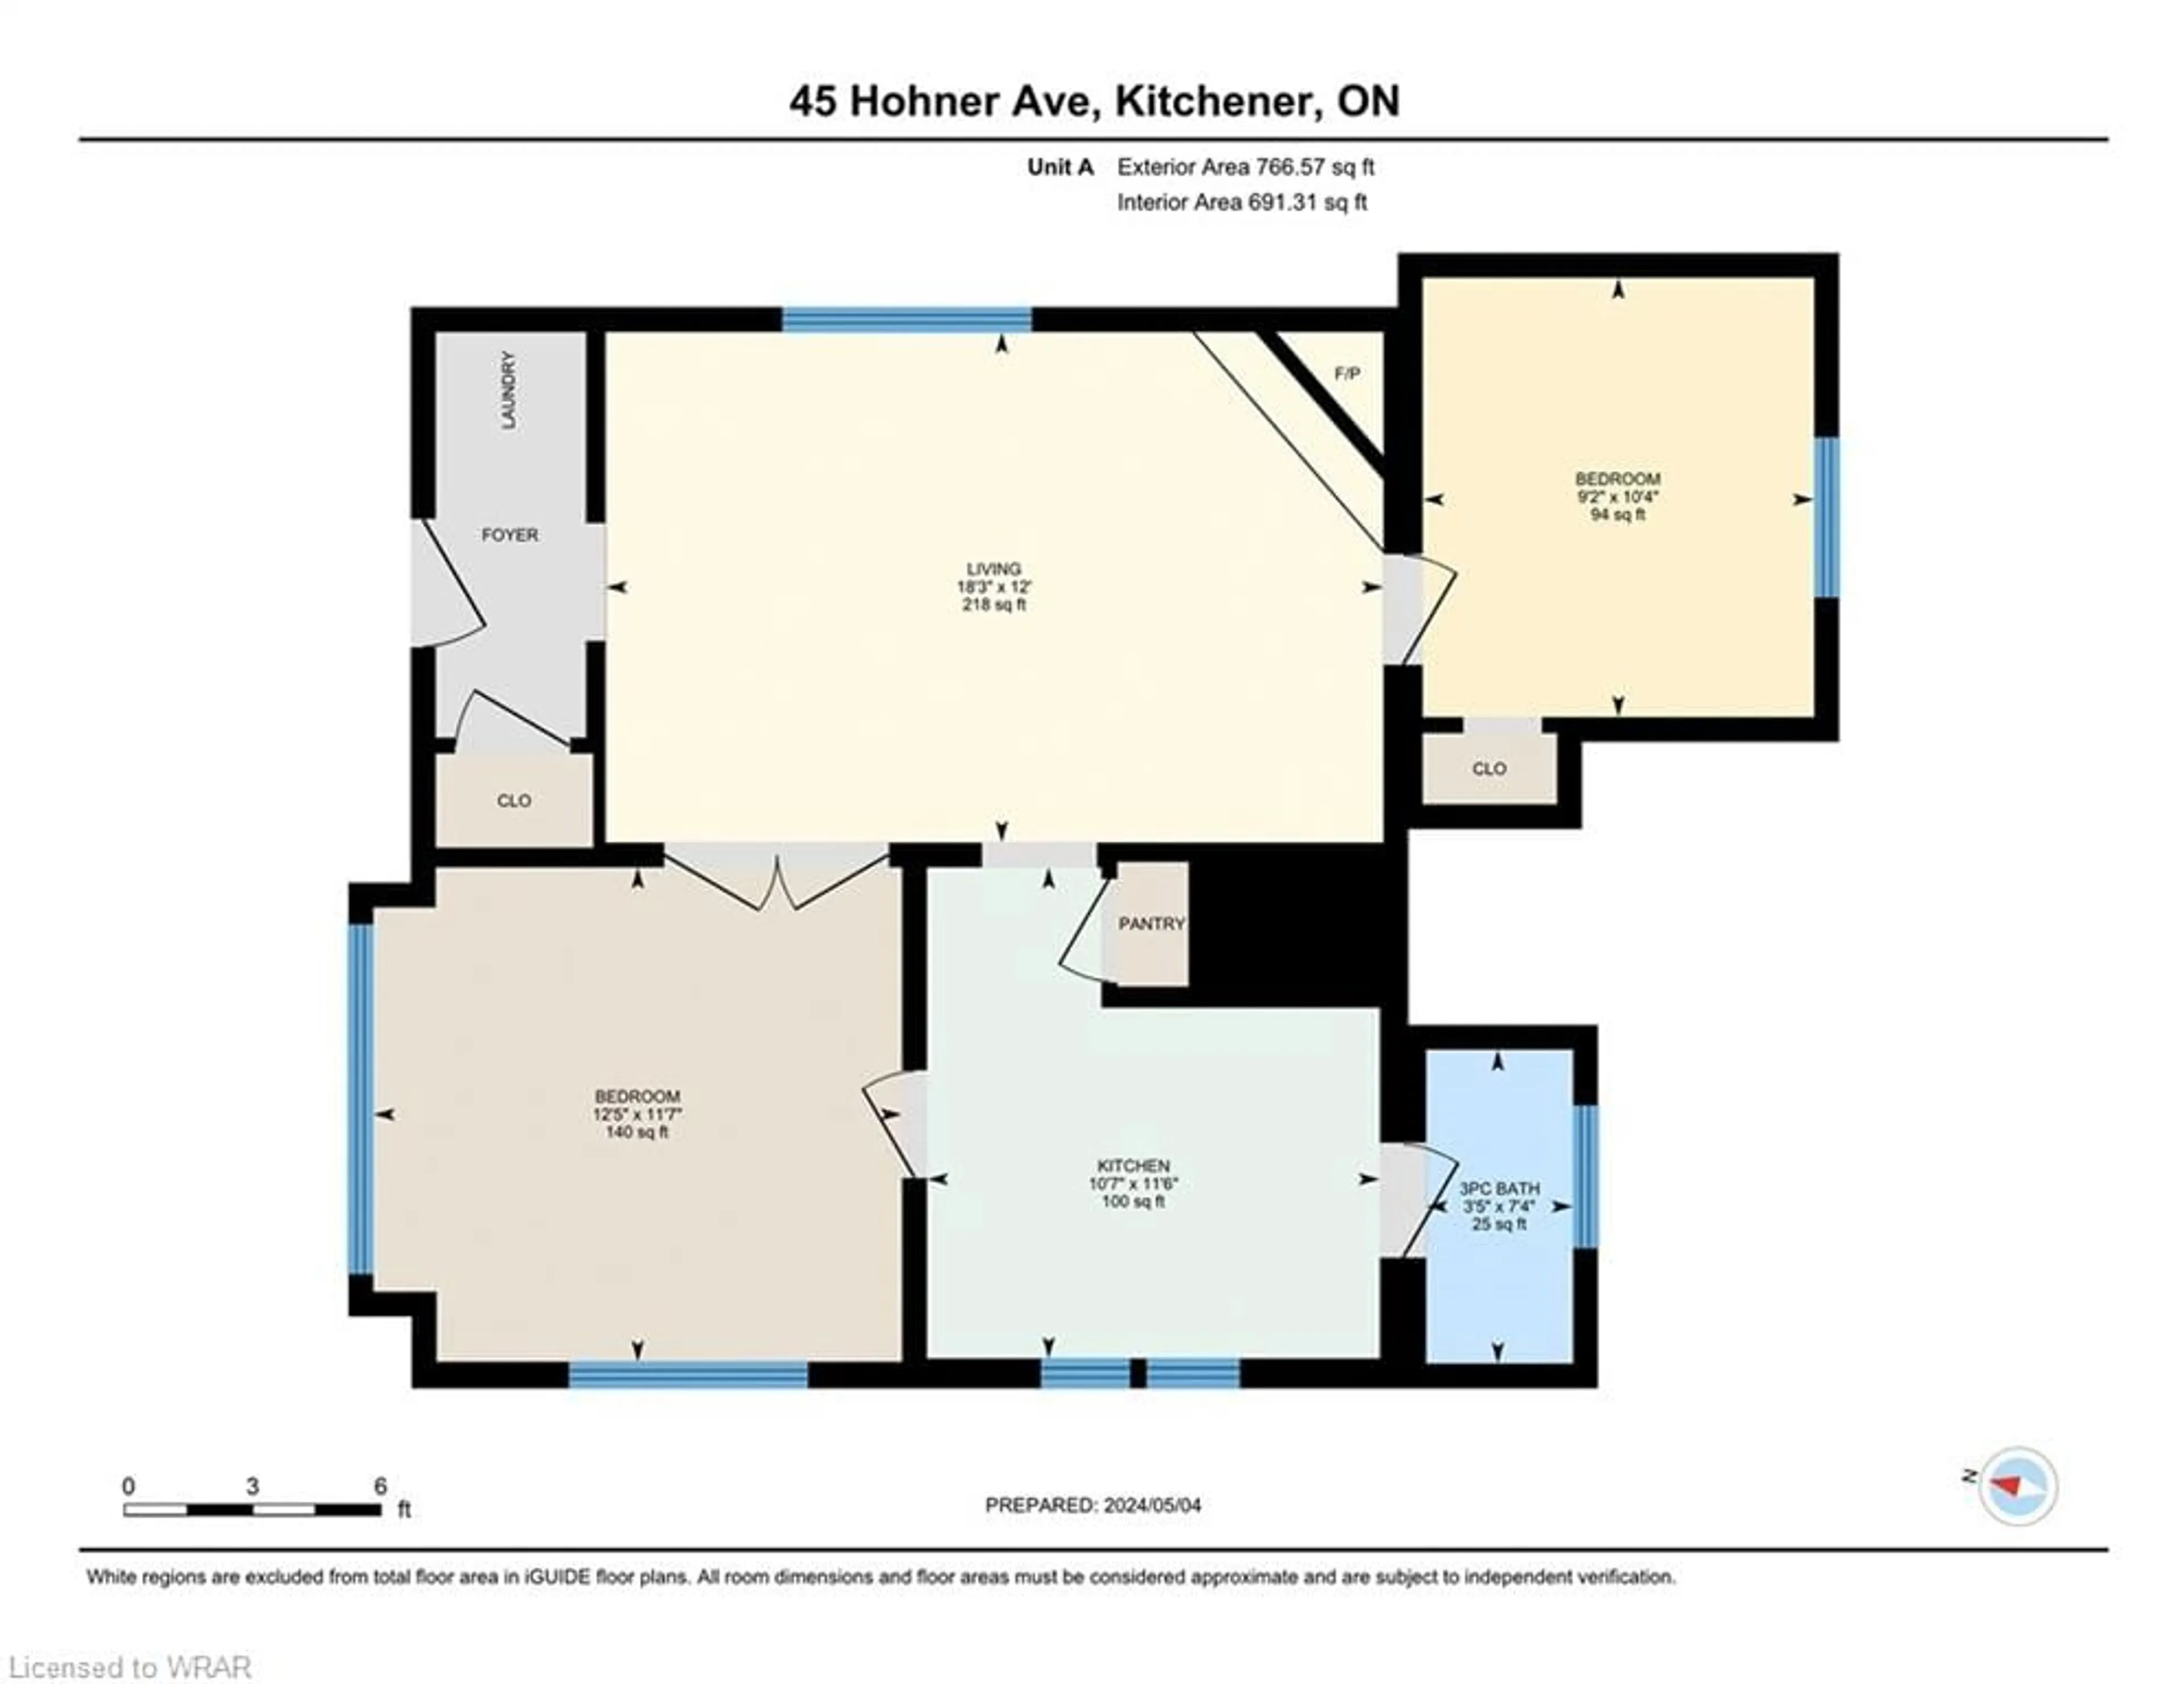 Floor plan for 45 Hohner Ave, Kitchener Ontario N2H 2V3